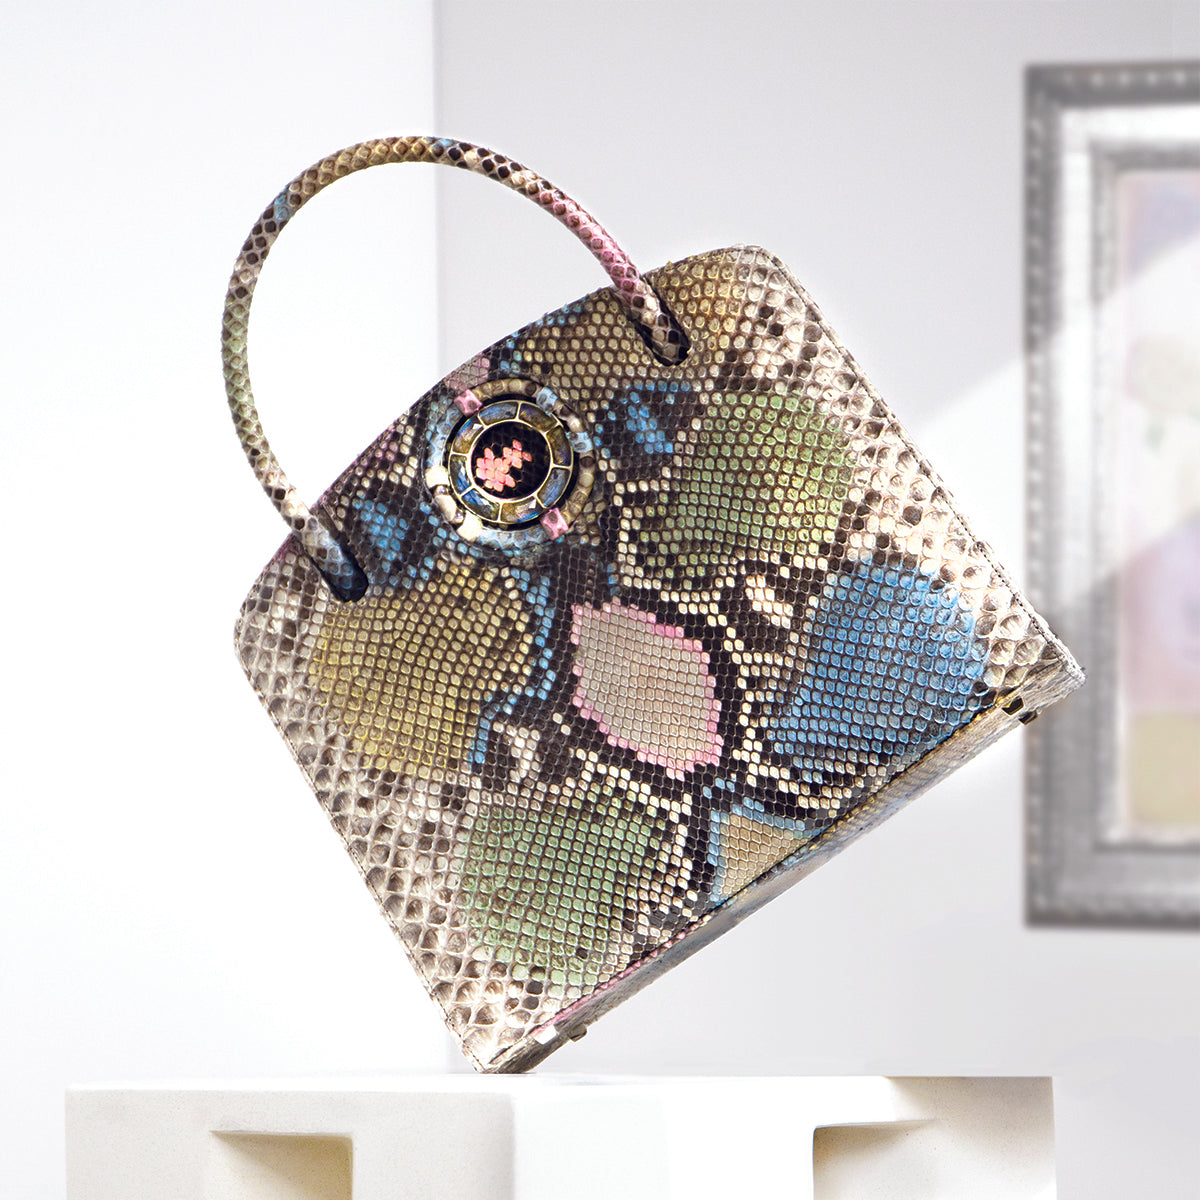 Pastel python Annette top handle handbag with labradorite gemstone grommet - Darby Scott